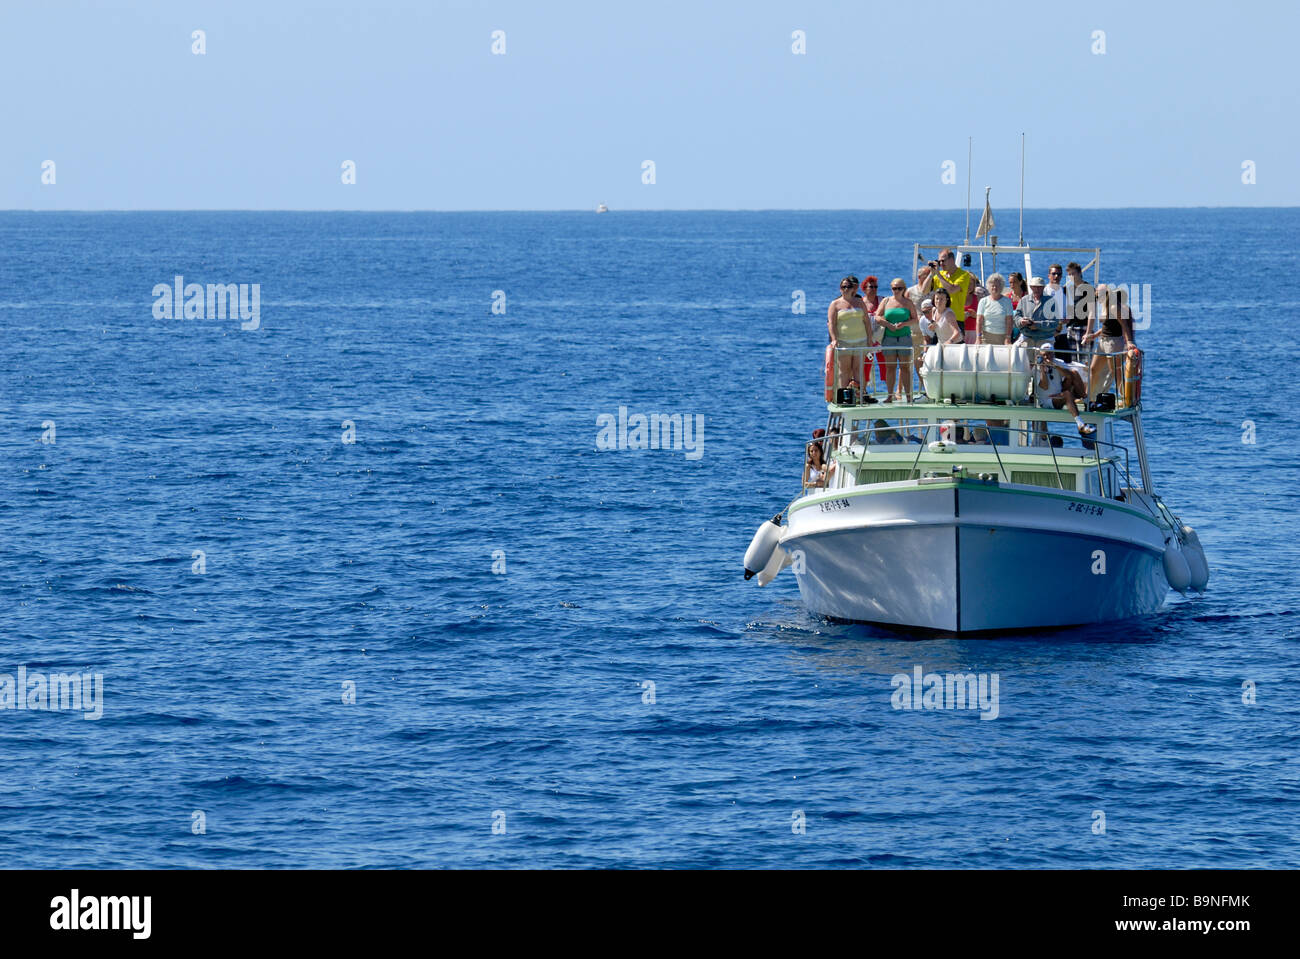 Die Exciment unter den Touristen auf dem Delphin Suche Boot, Puerto Rico, Gran Canaria, Kanarische Inseln, Spanien, Europa. Stockfoto